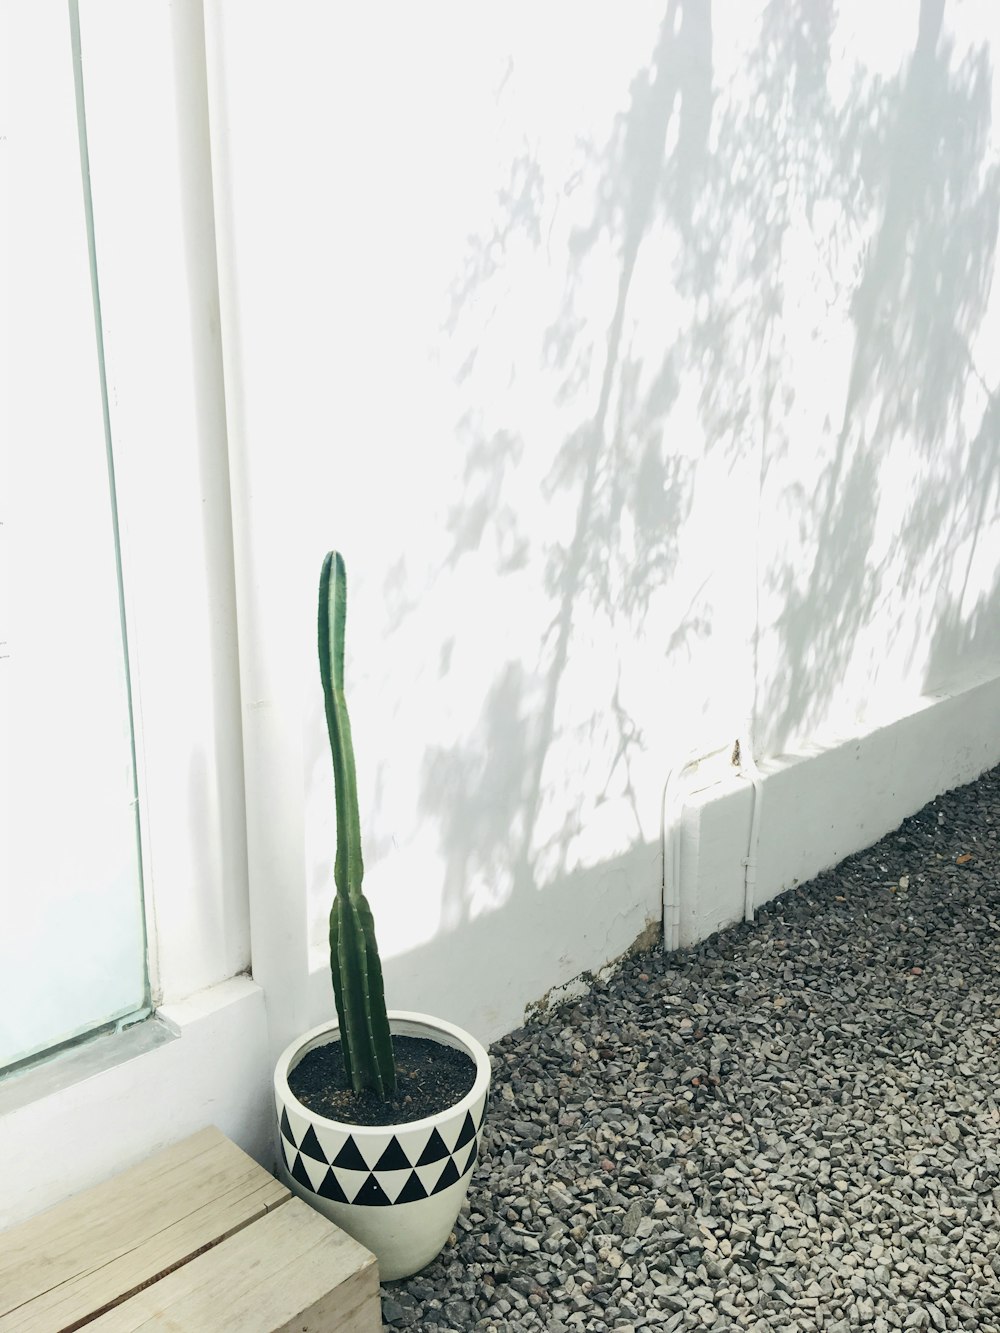 cactus plant in vase